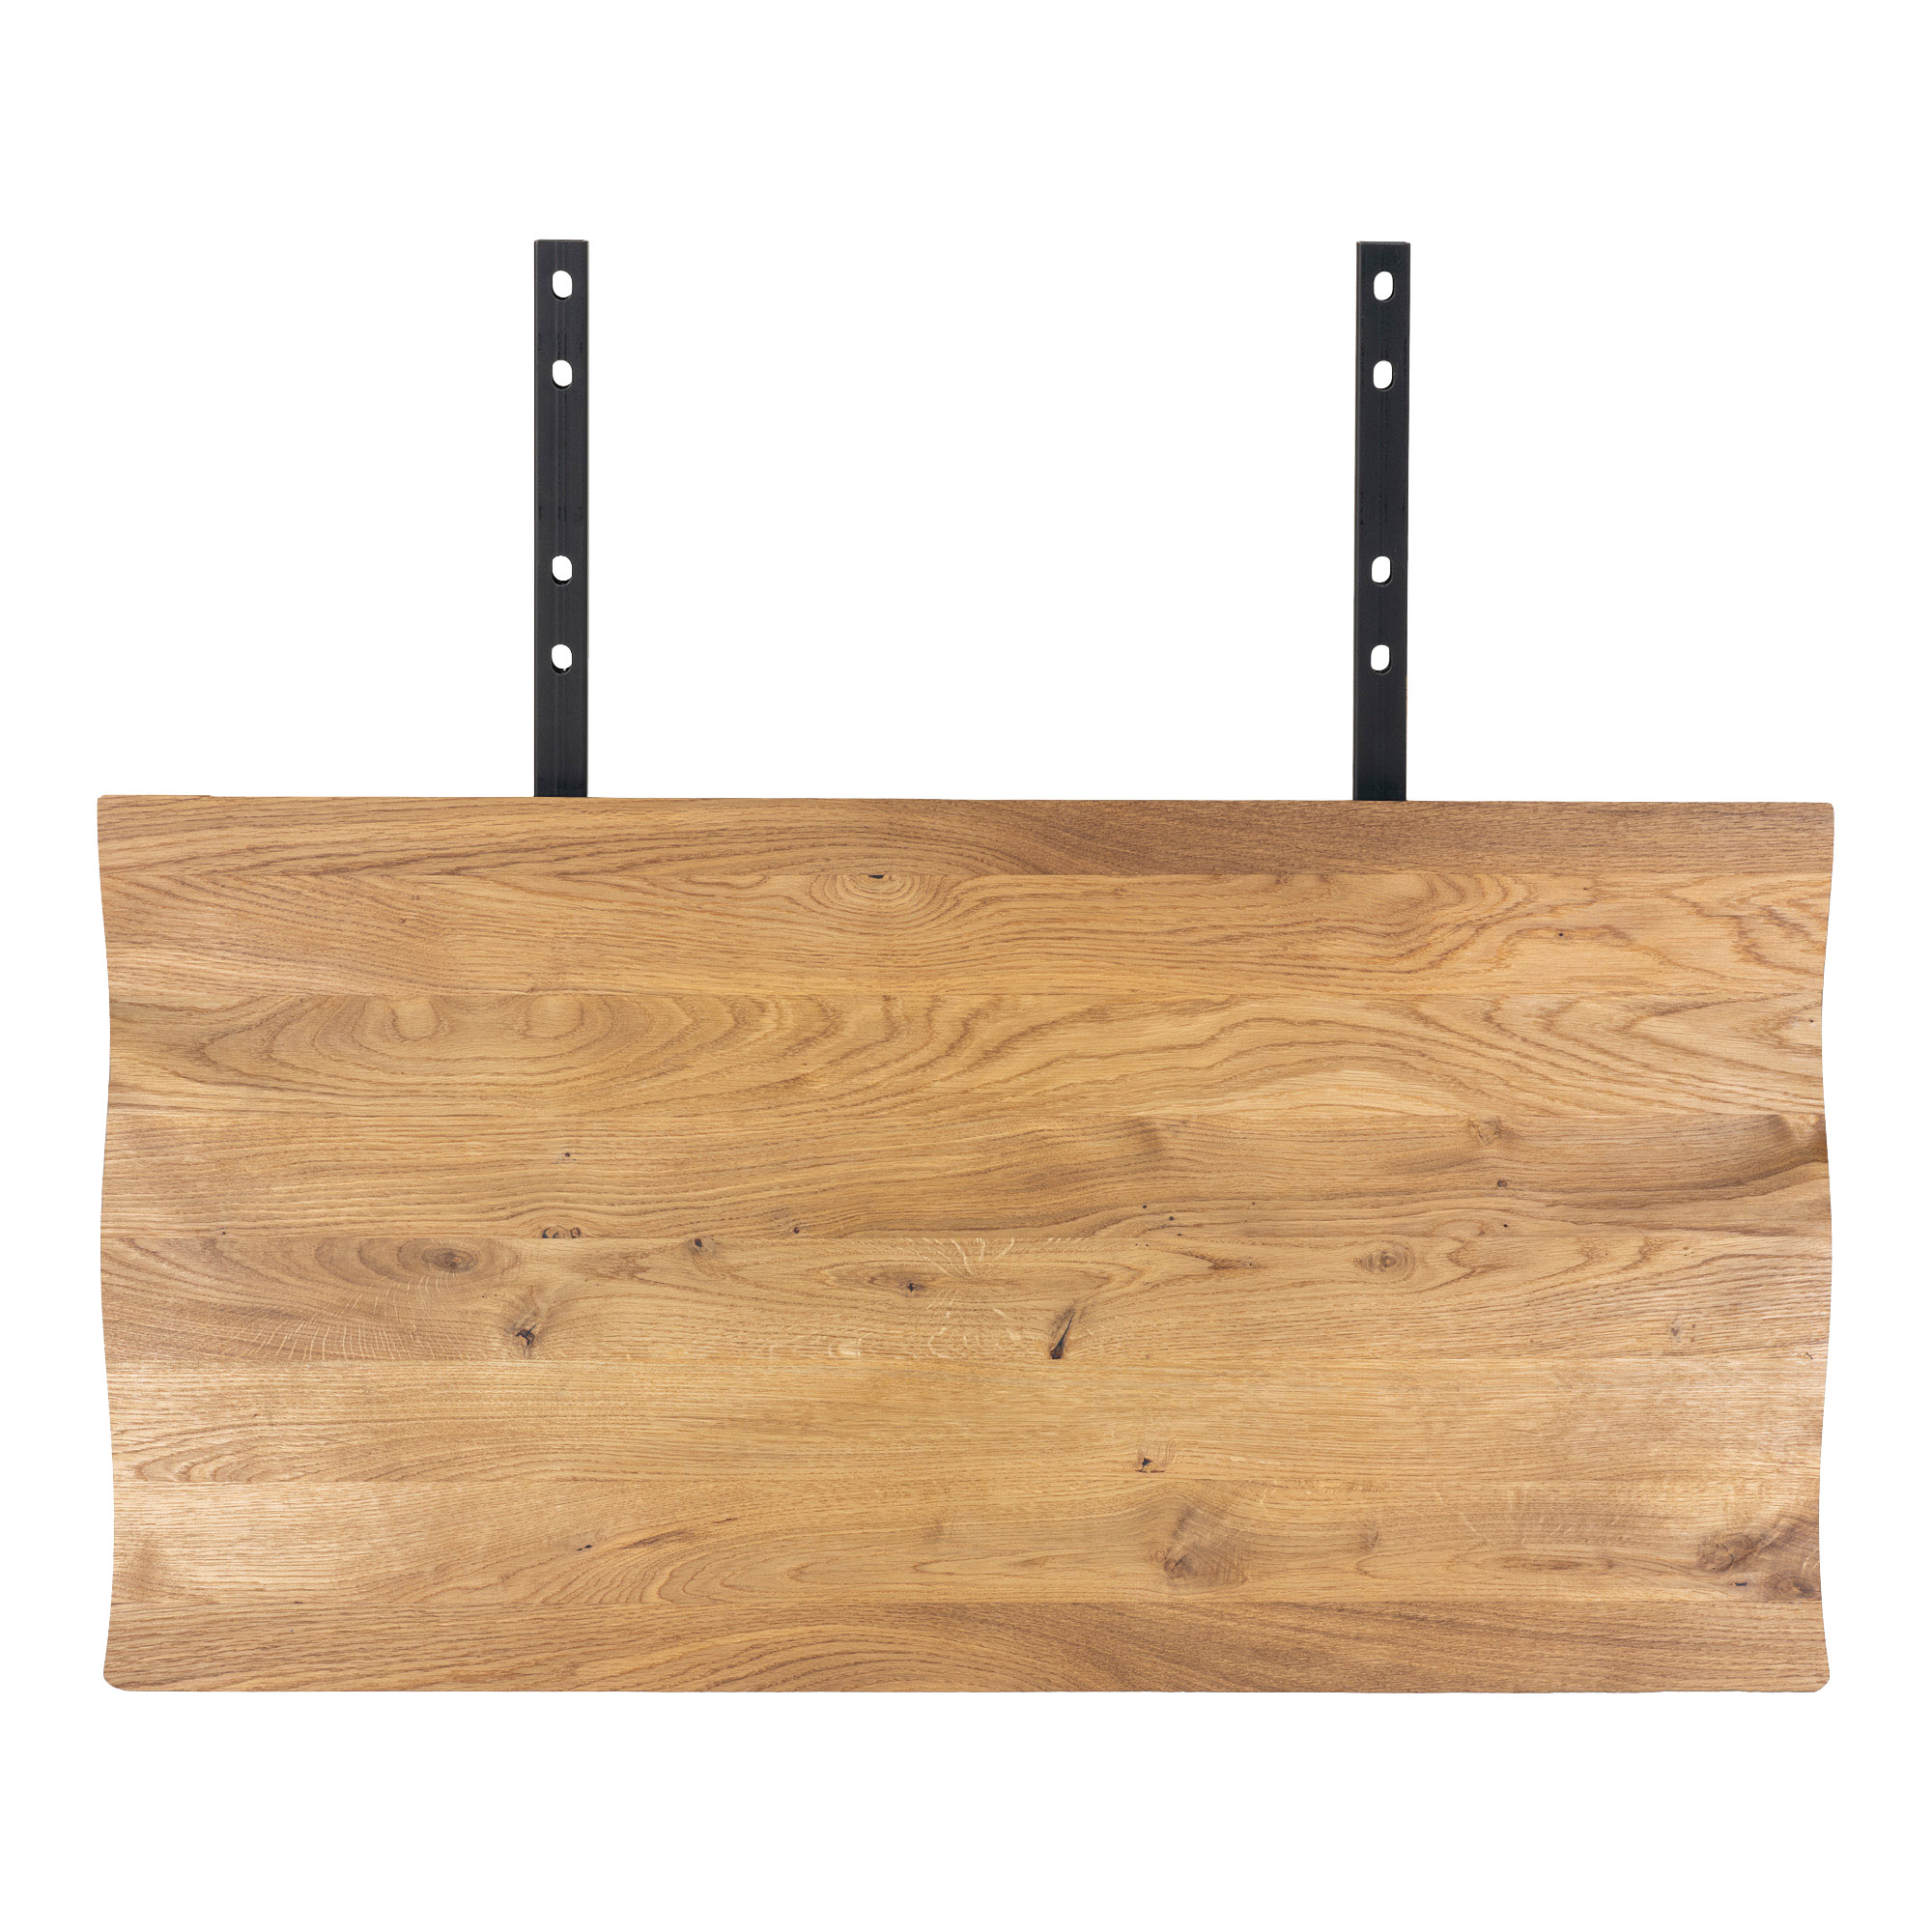 #3 - Juva - Spisebord i olieret  eg, 95 x 200 cm, med eller uden tillægsplader Med 2 tillægsplader